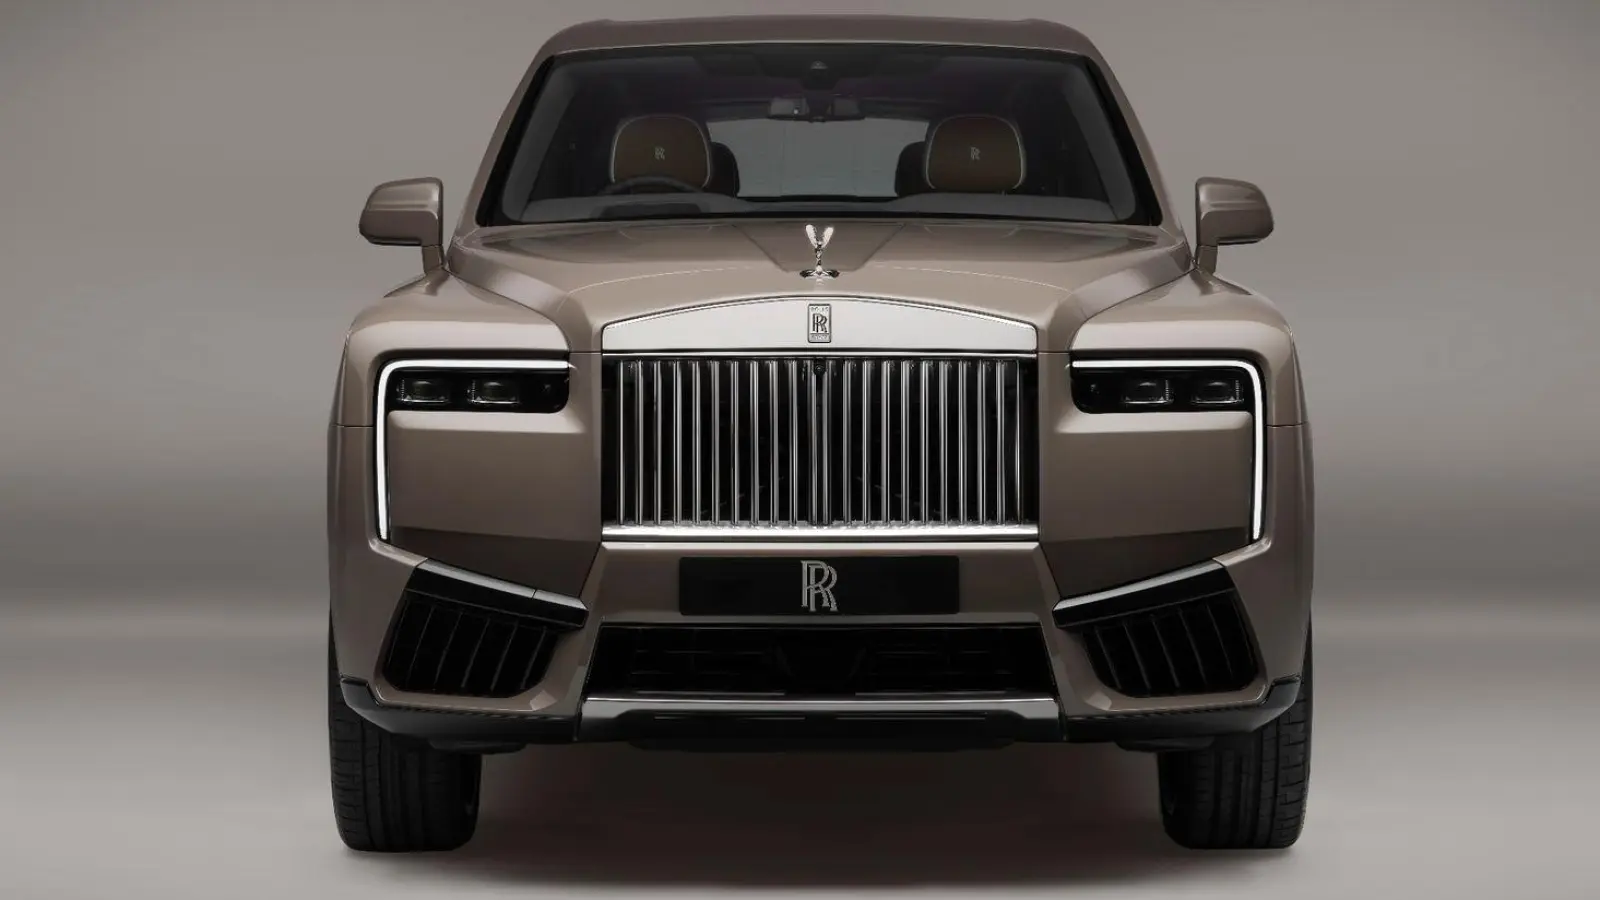 Das Update des Rolls-Royce Cullinan fährt unter anderem mit neu gestalteten Kabinen-Details vor. (Foto: rolls-roycemotorcars/rolls-roycemotorcars/dpa)